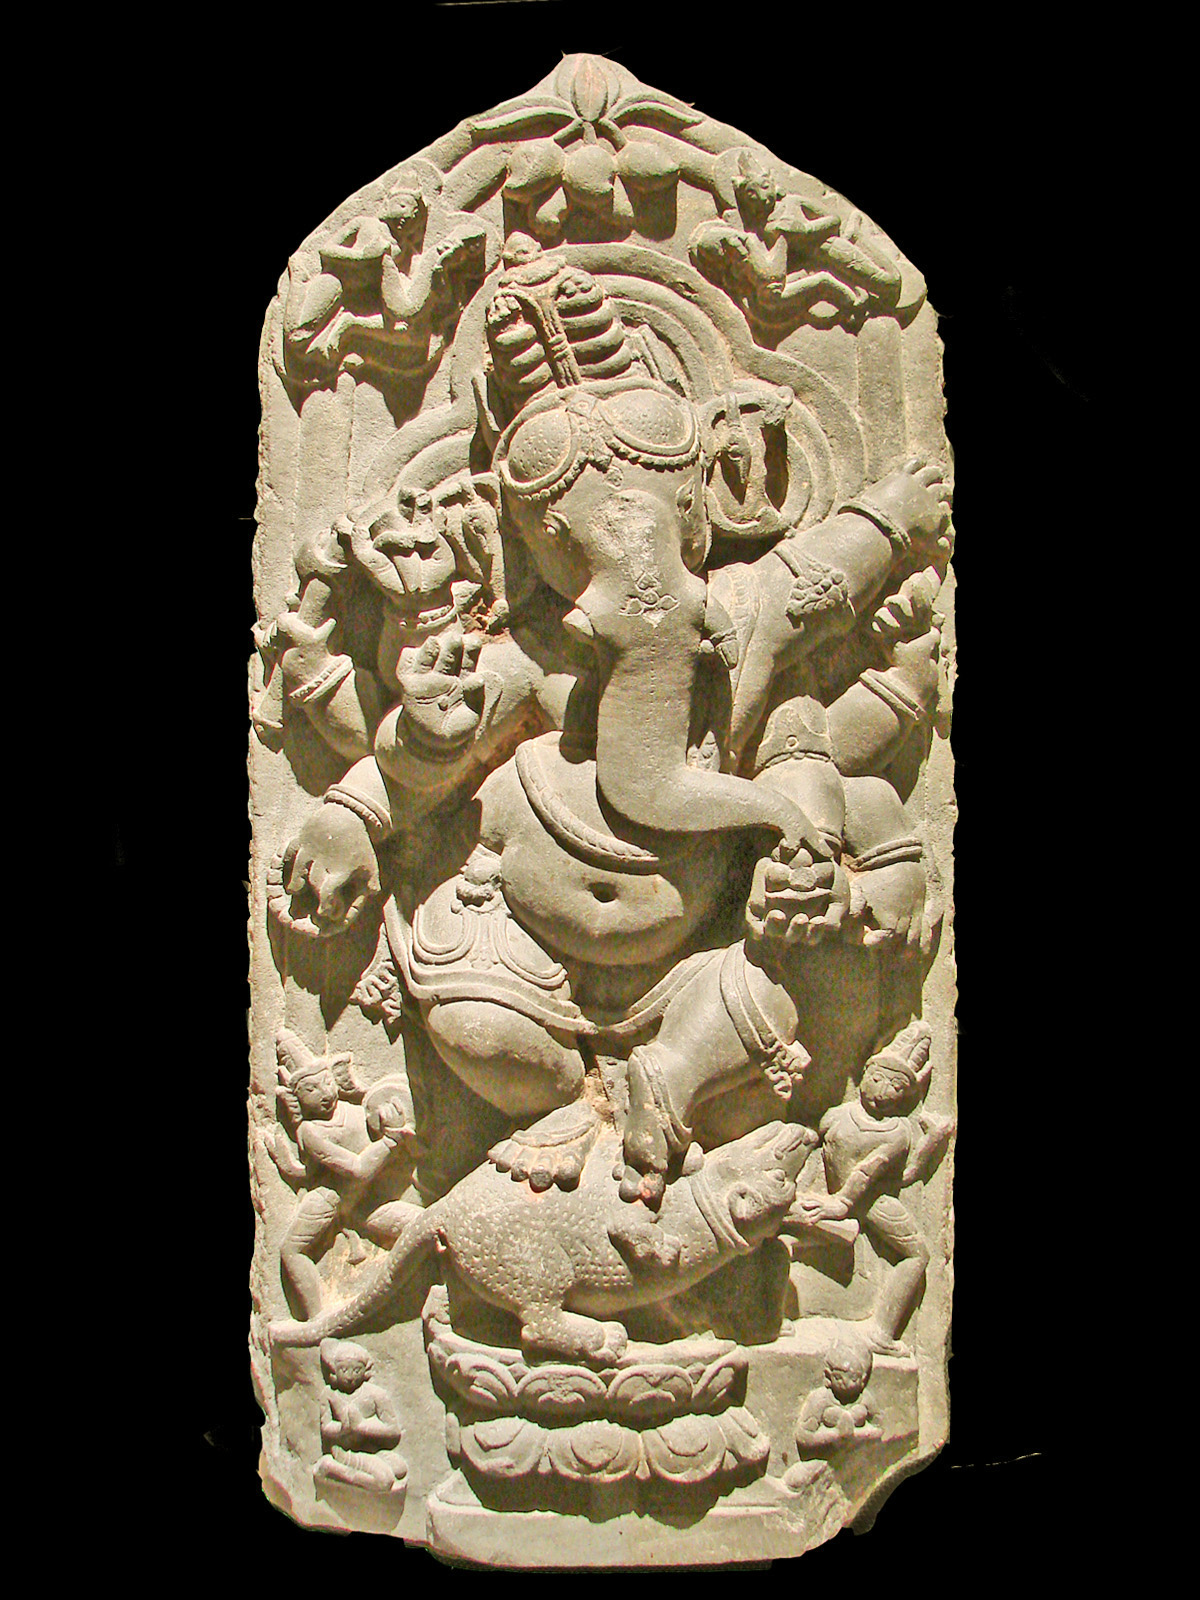 Ganesh (Ganesha) dansant Nord du Bengale, 11ème siècle après J.C. Musée d'art indien de Berlin (Dahlem)